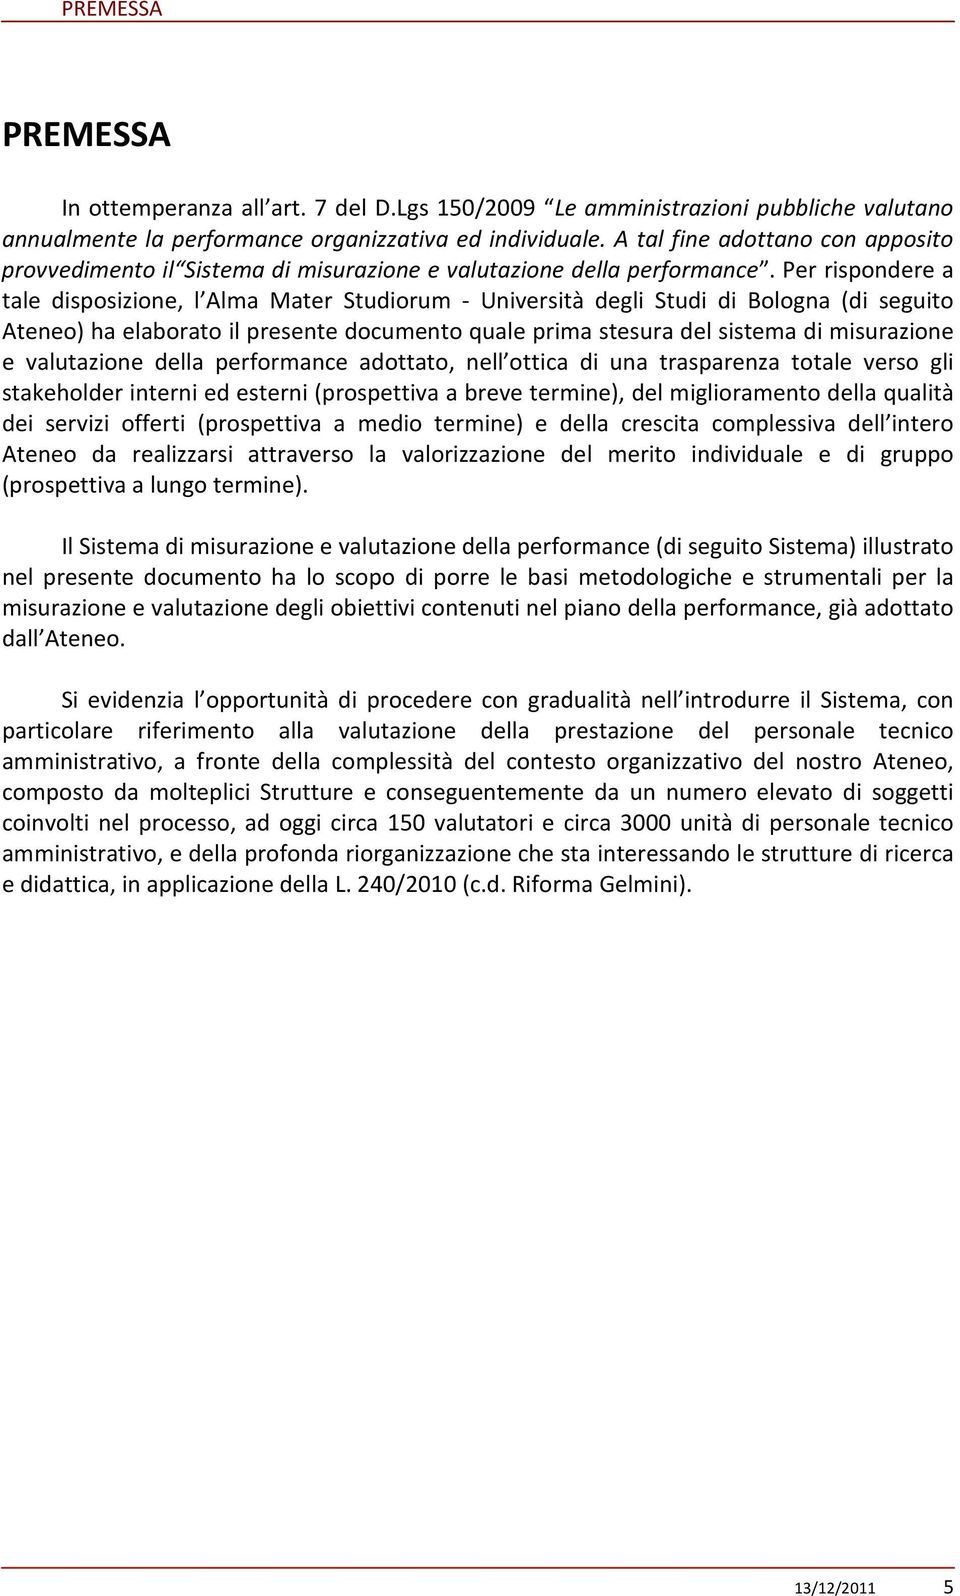 Per rispondere a tale disposizione, l Alma Mater Studiorum - Università degli Studi di Bologna (di seguito Ateneo) ha elaborato il presente documento quale prima stesura del sistema di misurazione e